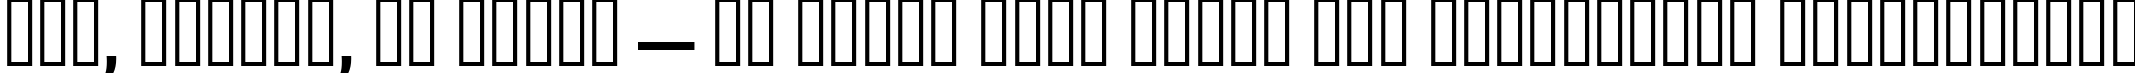 Пример написания шрифтом AntigoniBd   Bold текста на украинском